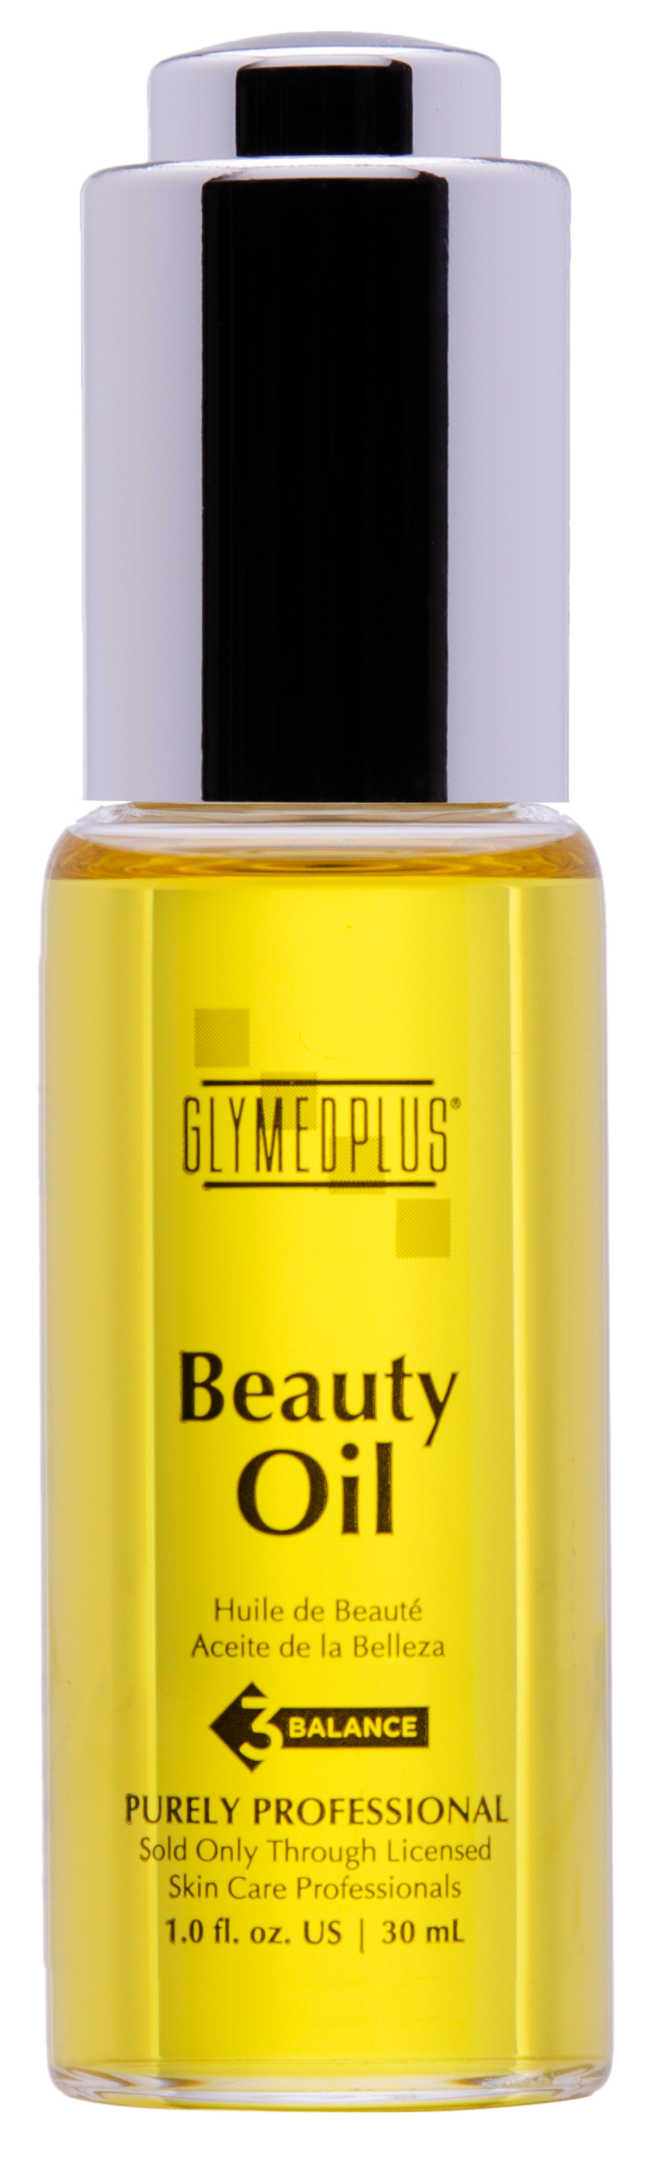 Glymed Plus- Beauty Oil